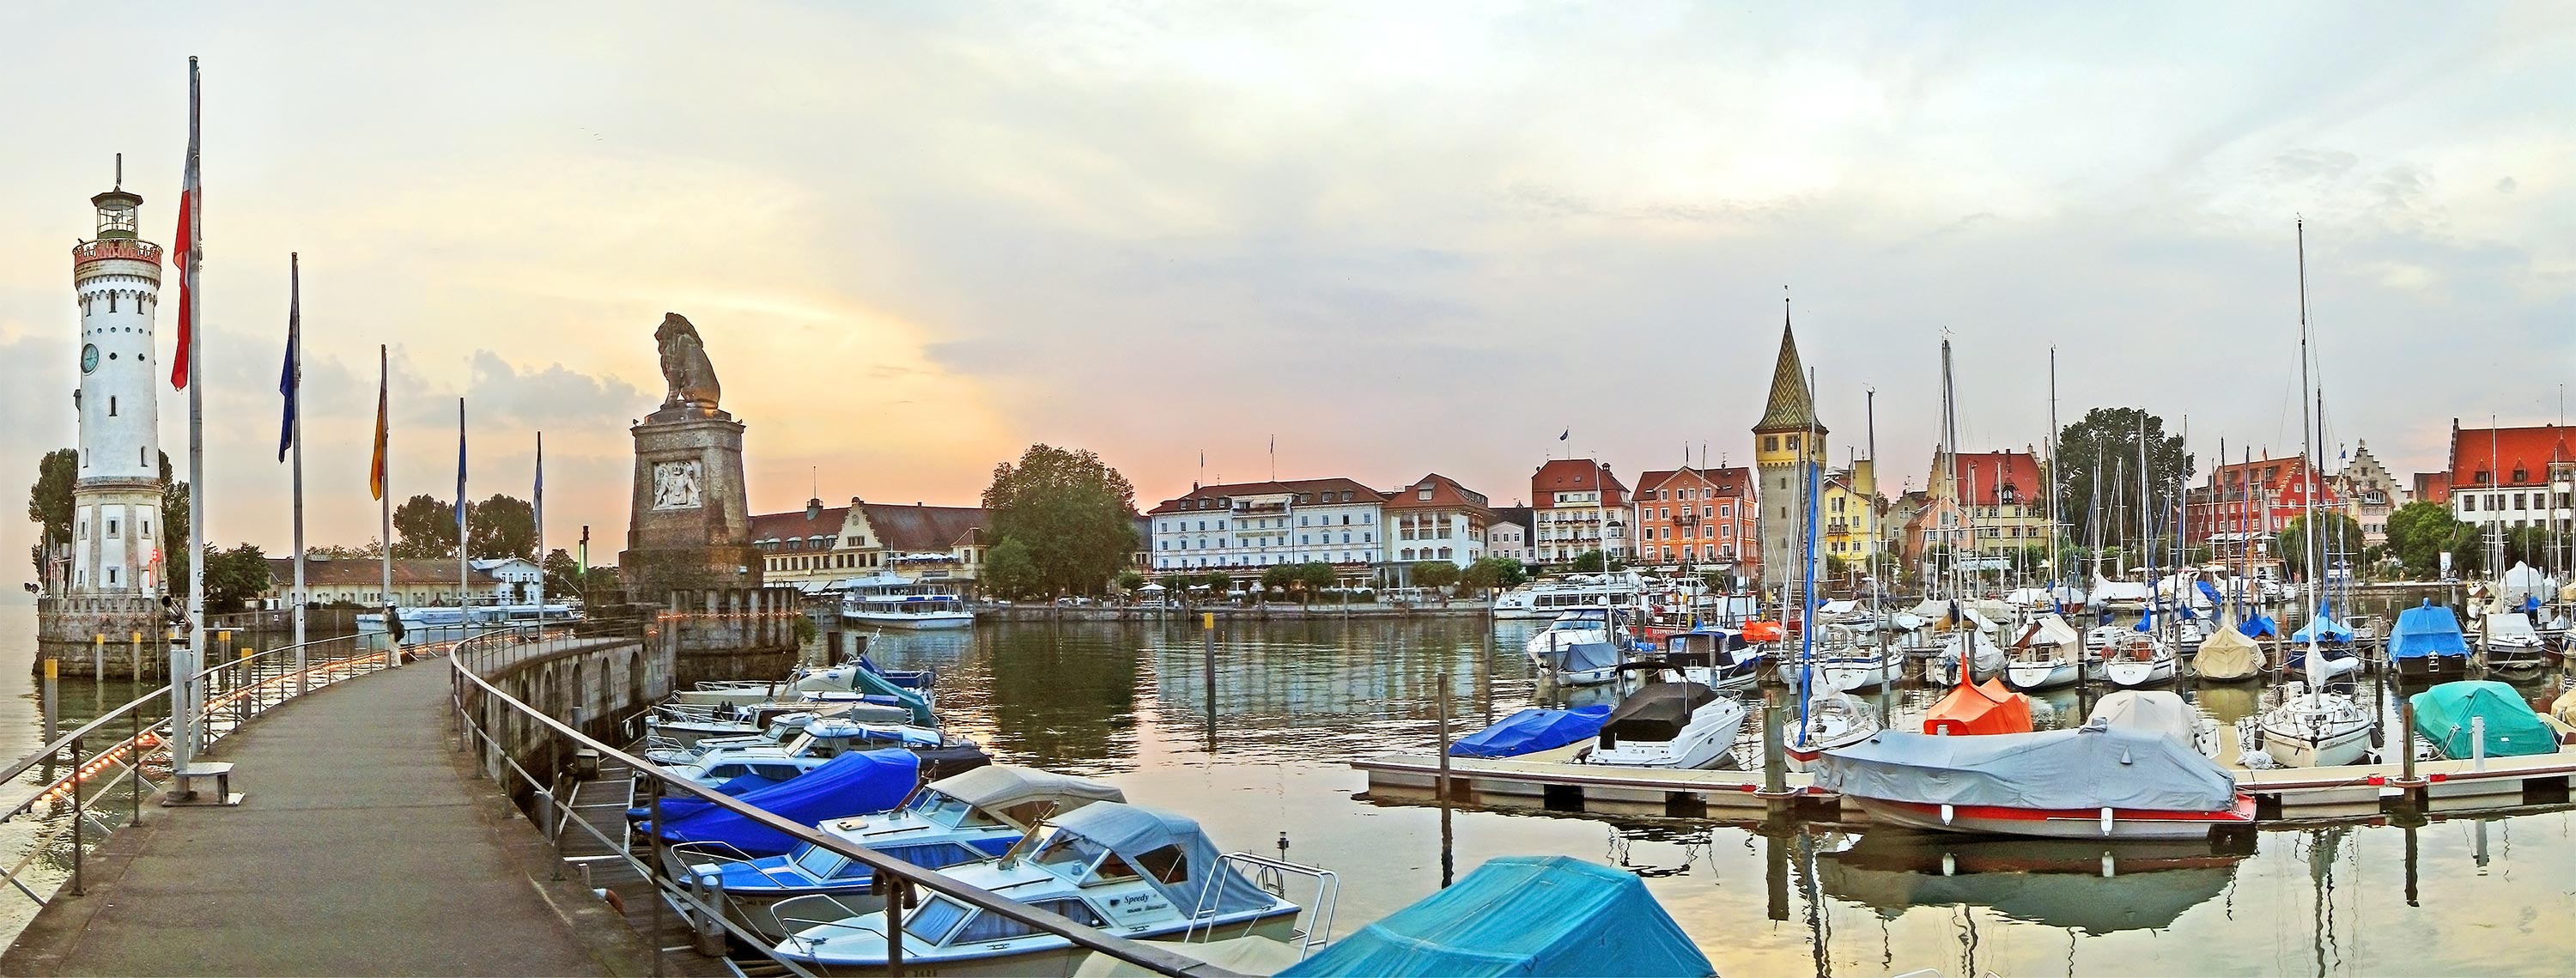 Lindau am Bodensee - Hafen mit Blick auf Neuen Leuchtturm und Löwen-Statue an der Hafeneinfahrt